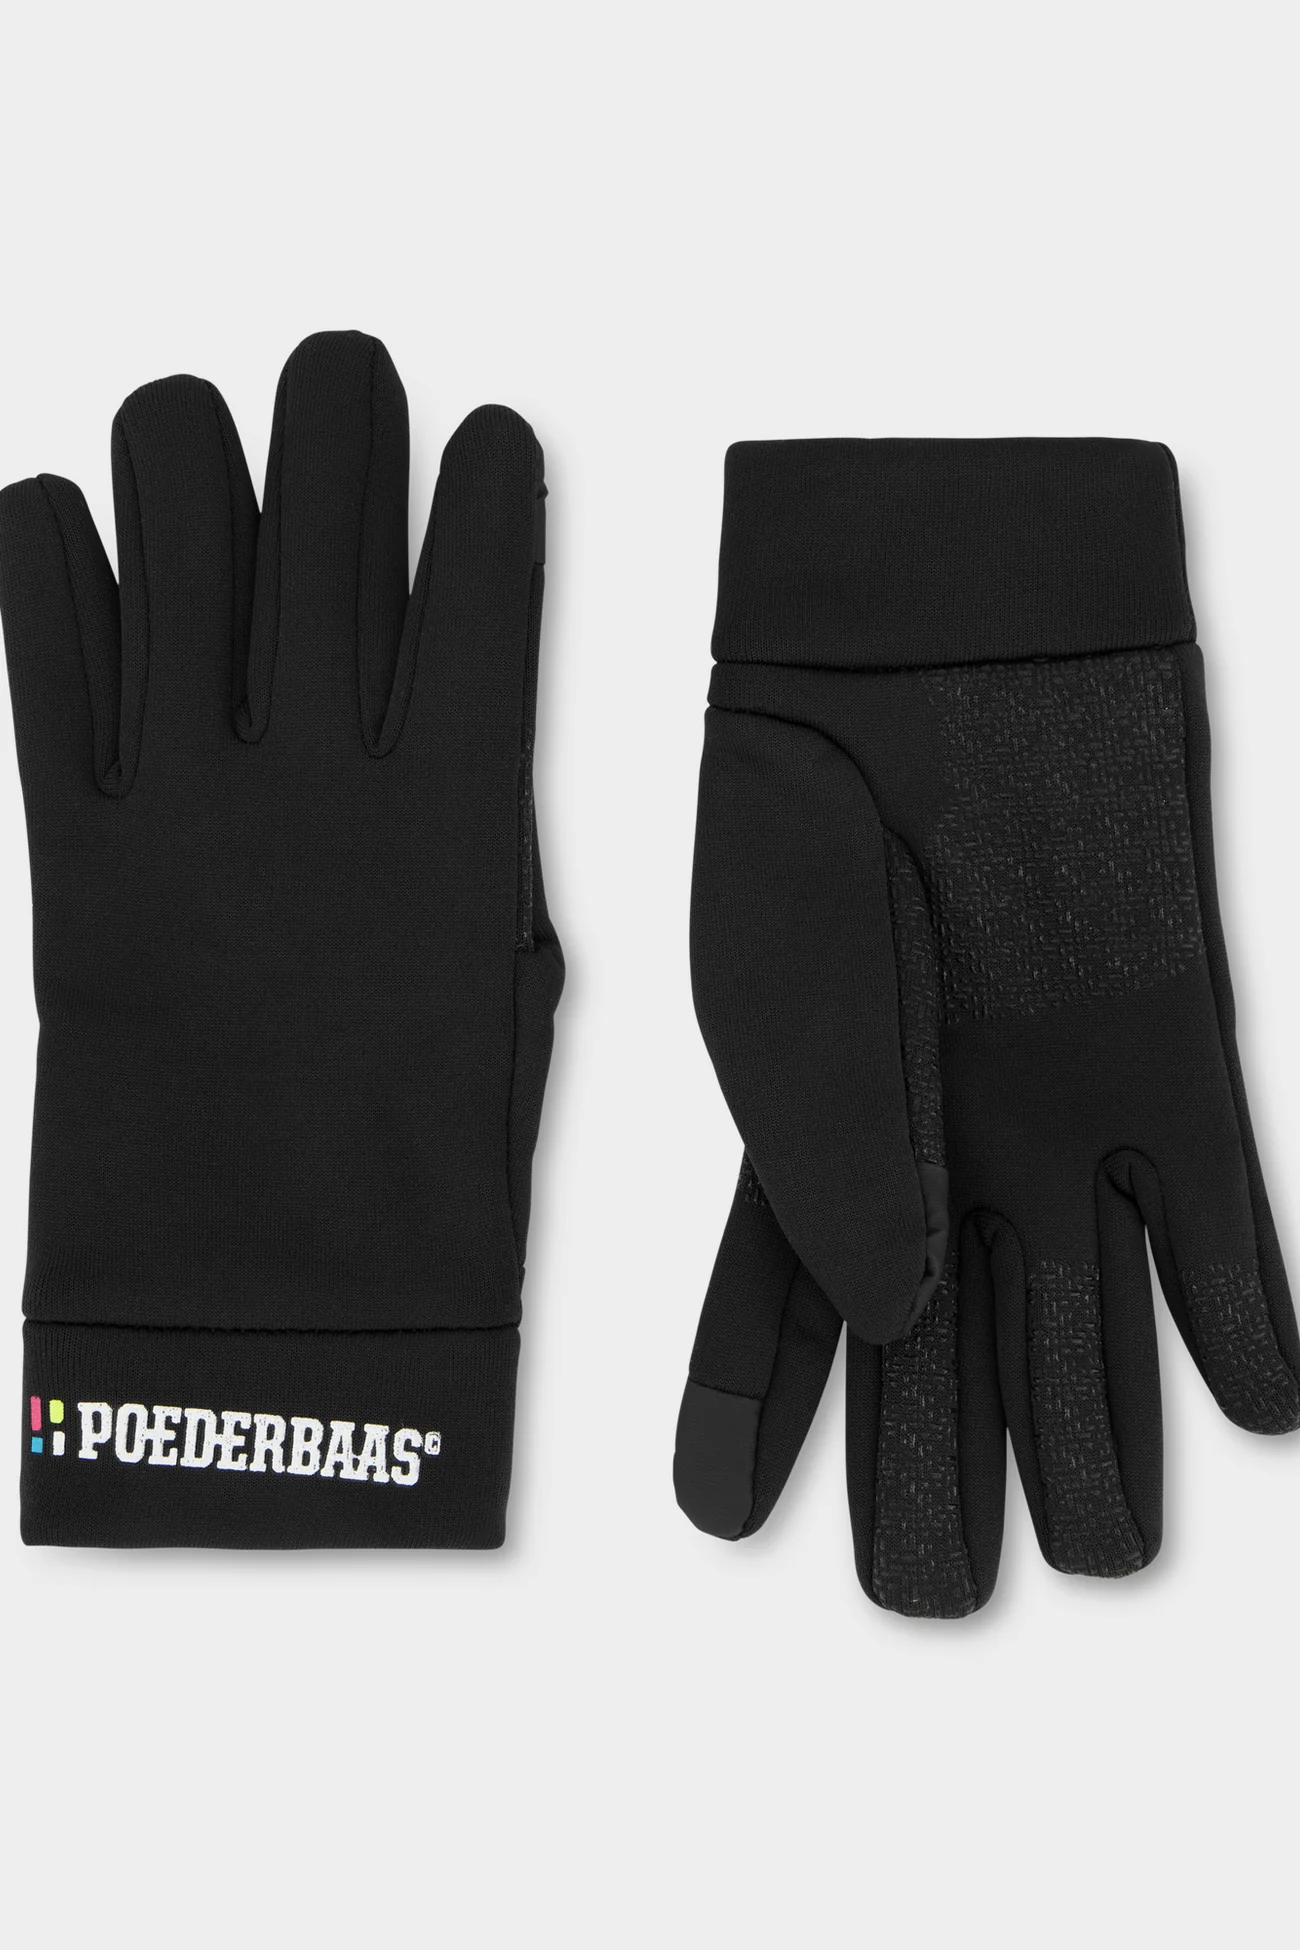 Poederbaas Touchscreen handschoenen zwart